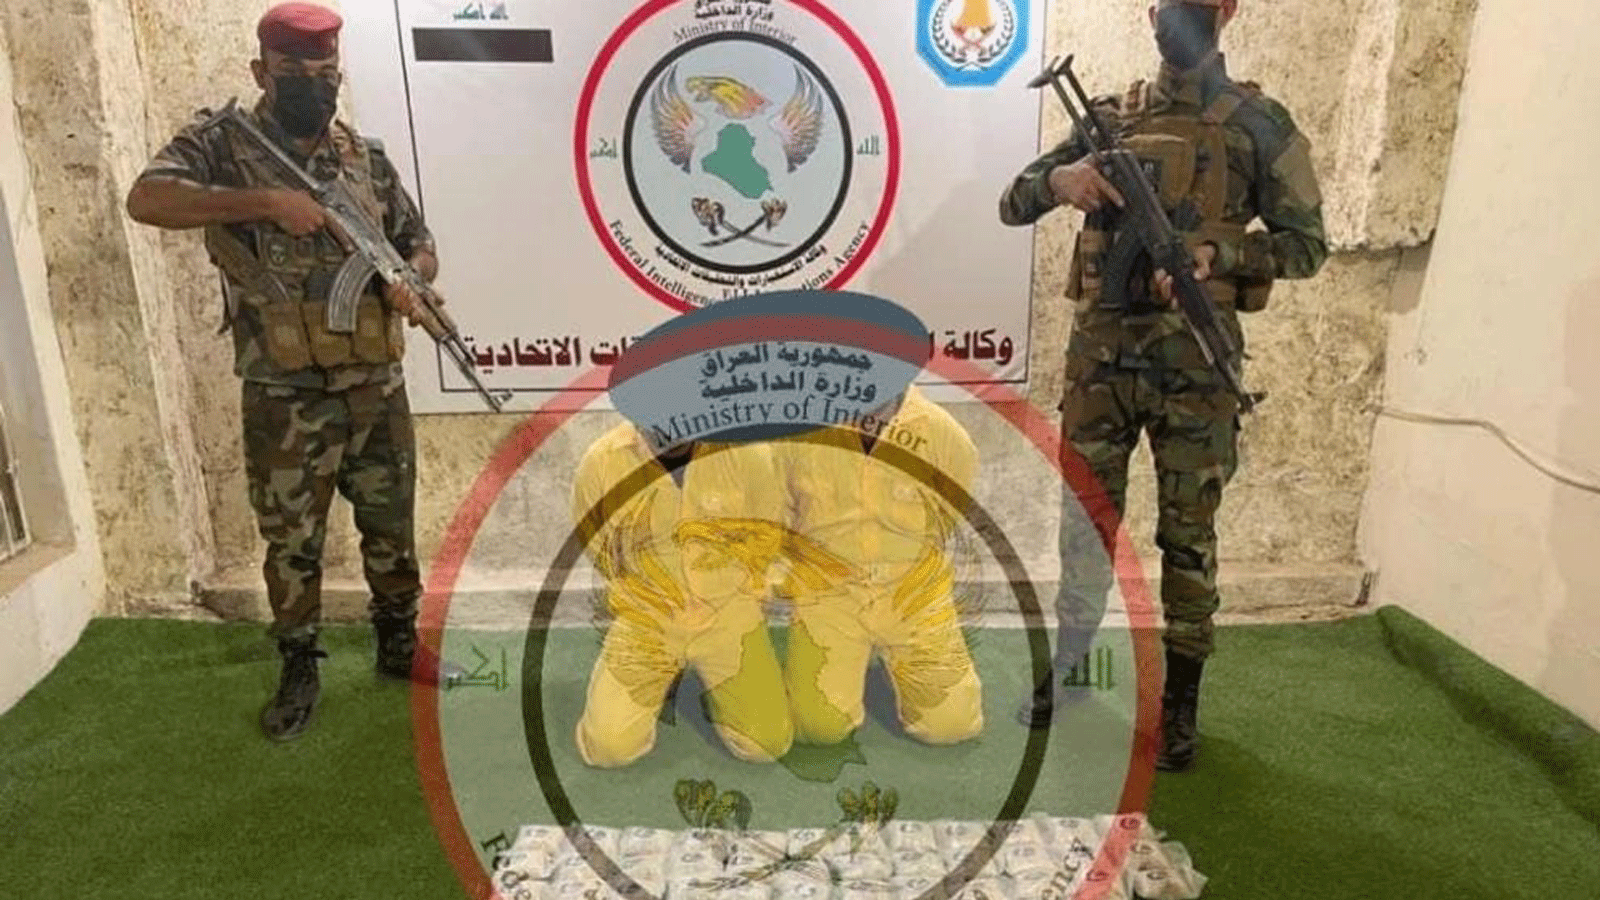 صورة من إعلام وزارة الداخلية العراقية للتاجرين المعتقلين على الحدود مع سوريا، وقد غطت وجههما بشعارها الرسمي